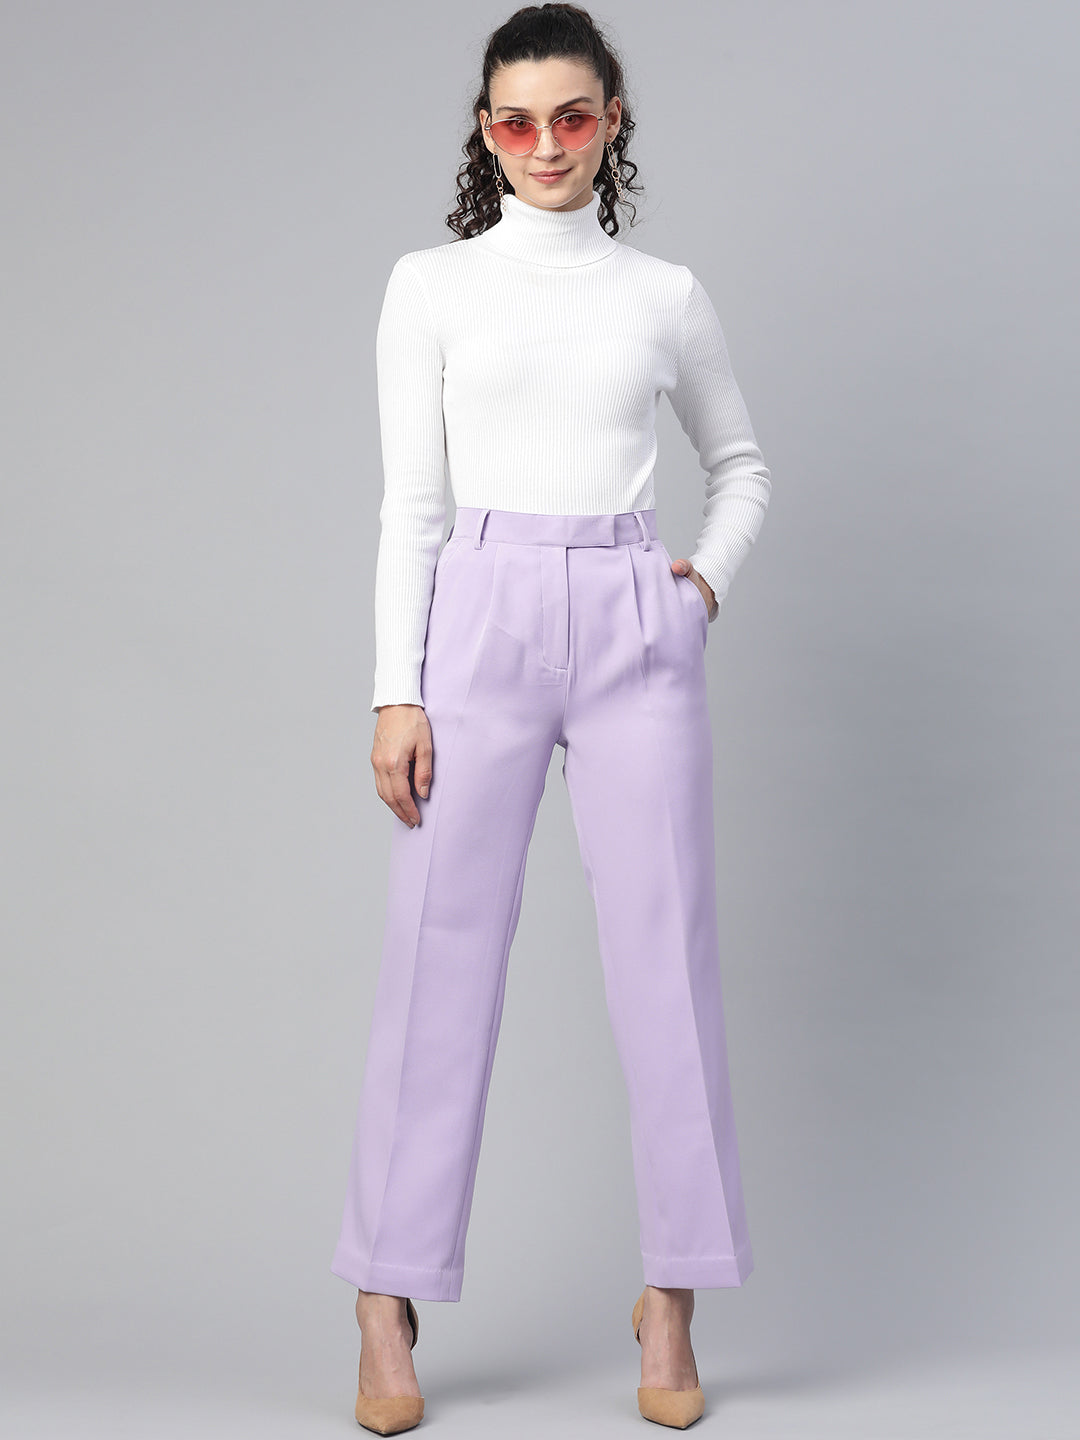 Cotton Ladies Formal Pants, Size : XL, XXL, Feature : Comfortable